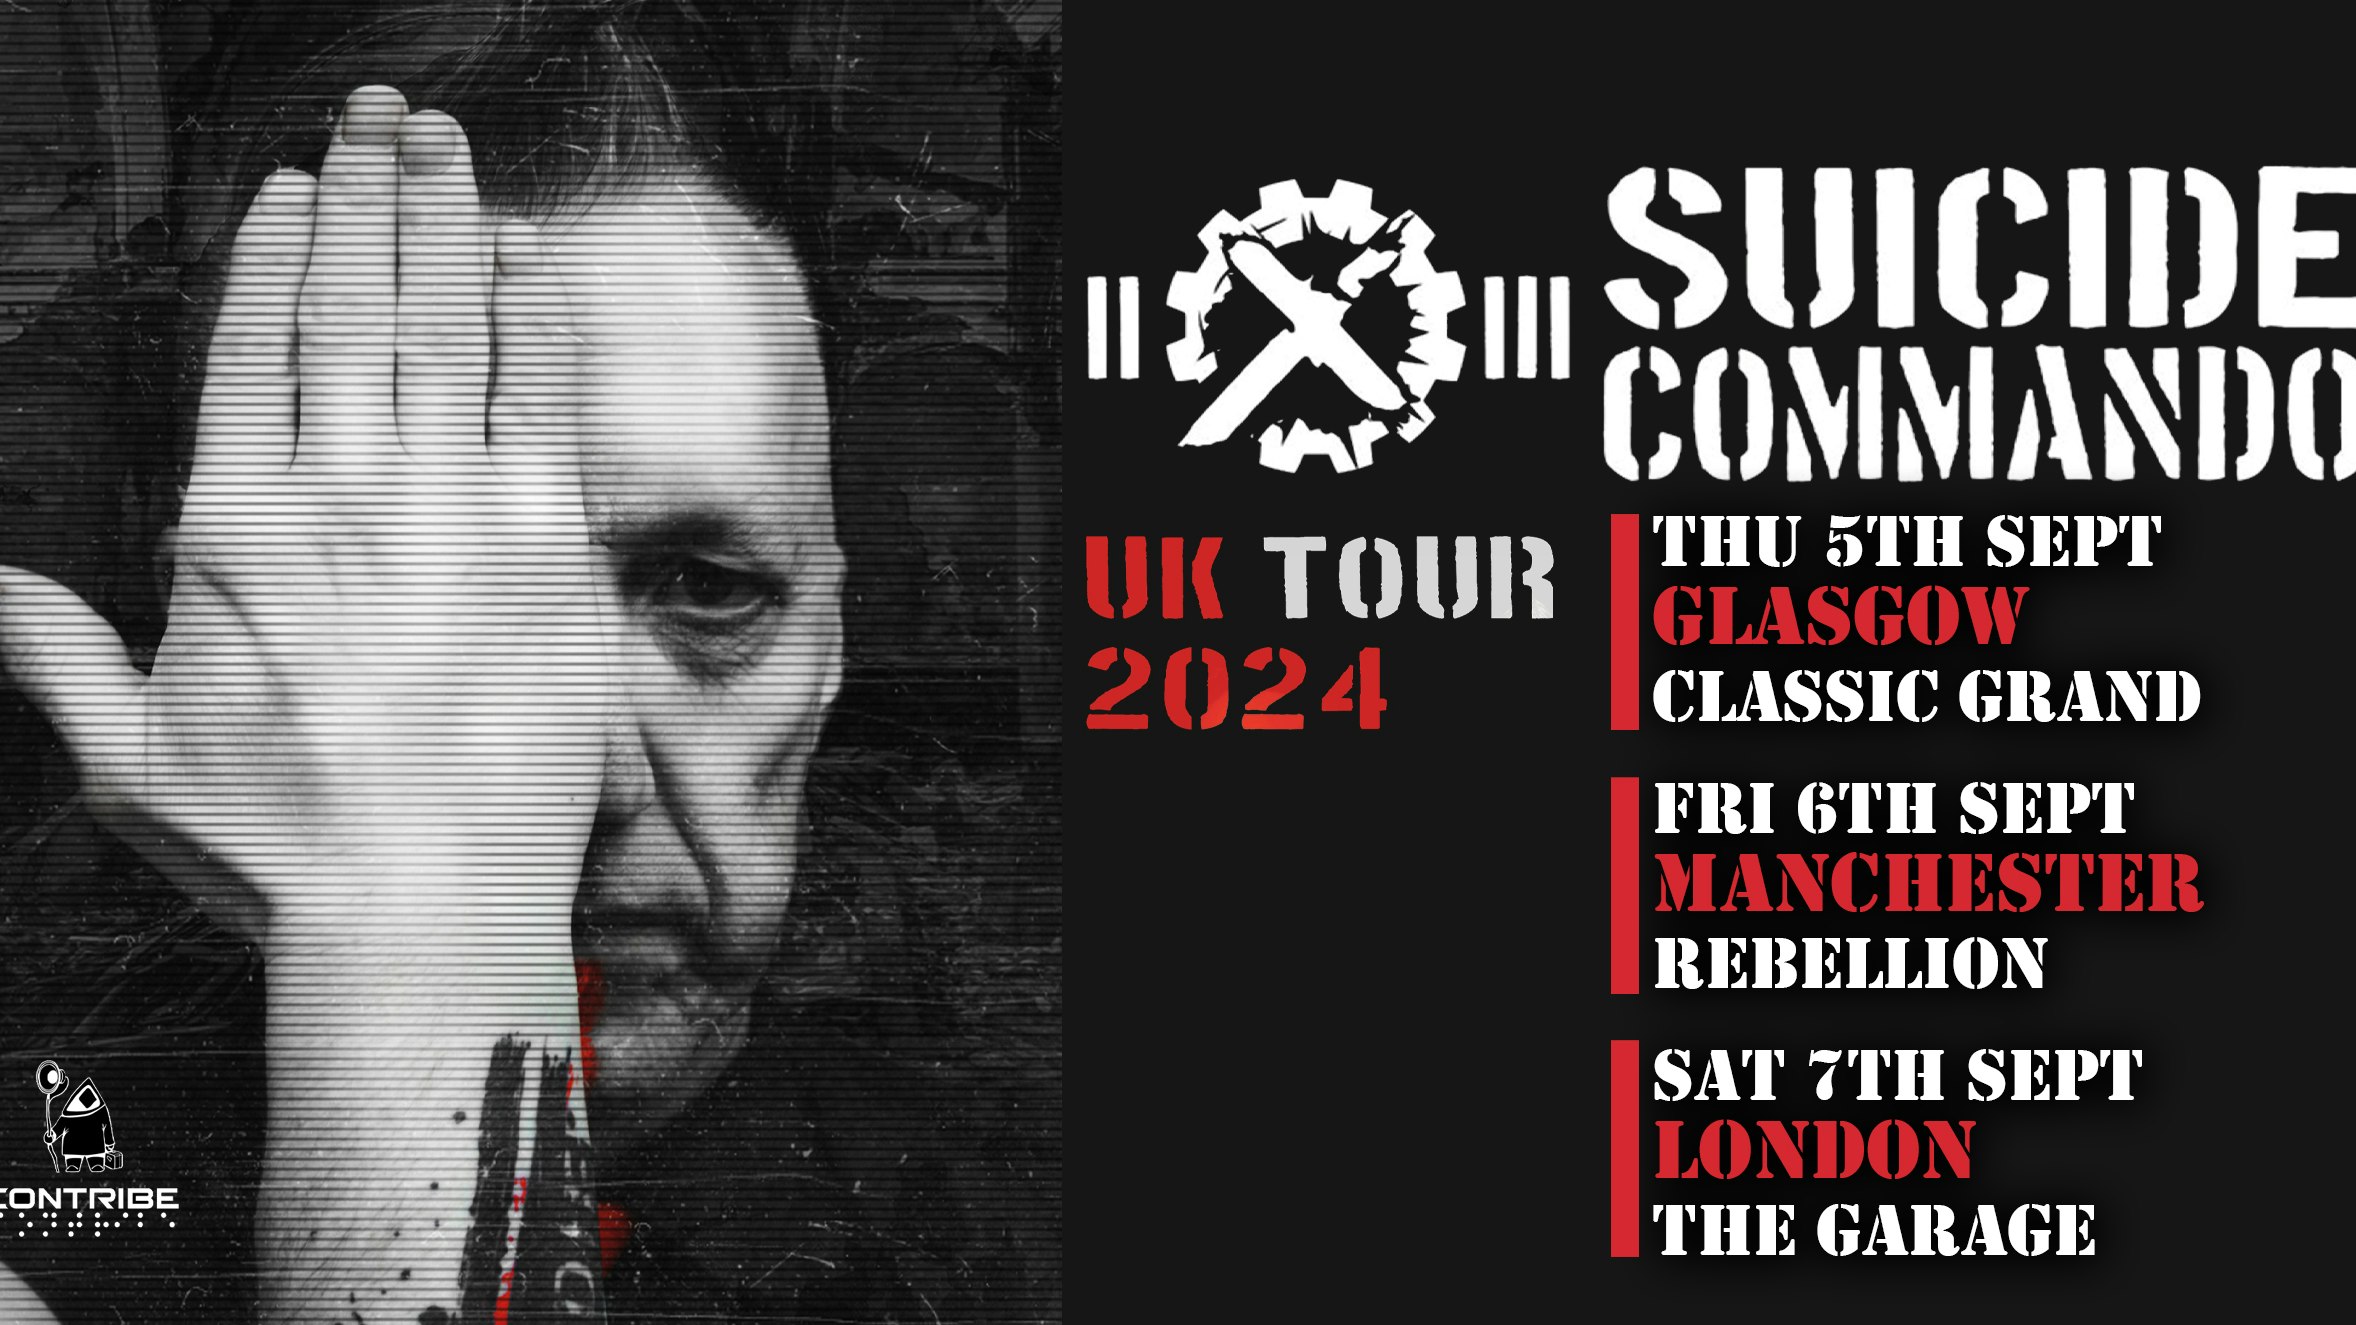 SUICIDE COMMANDO 2024 UK TOUR